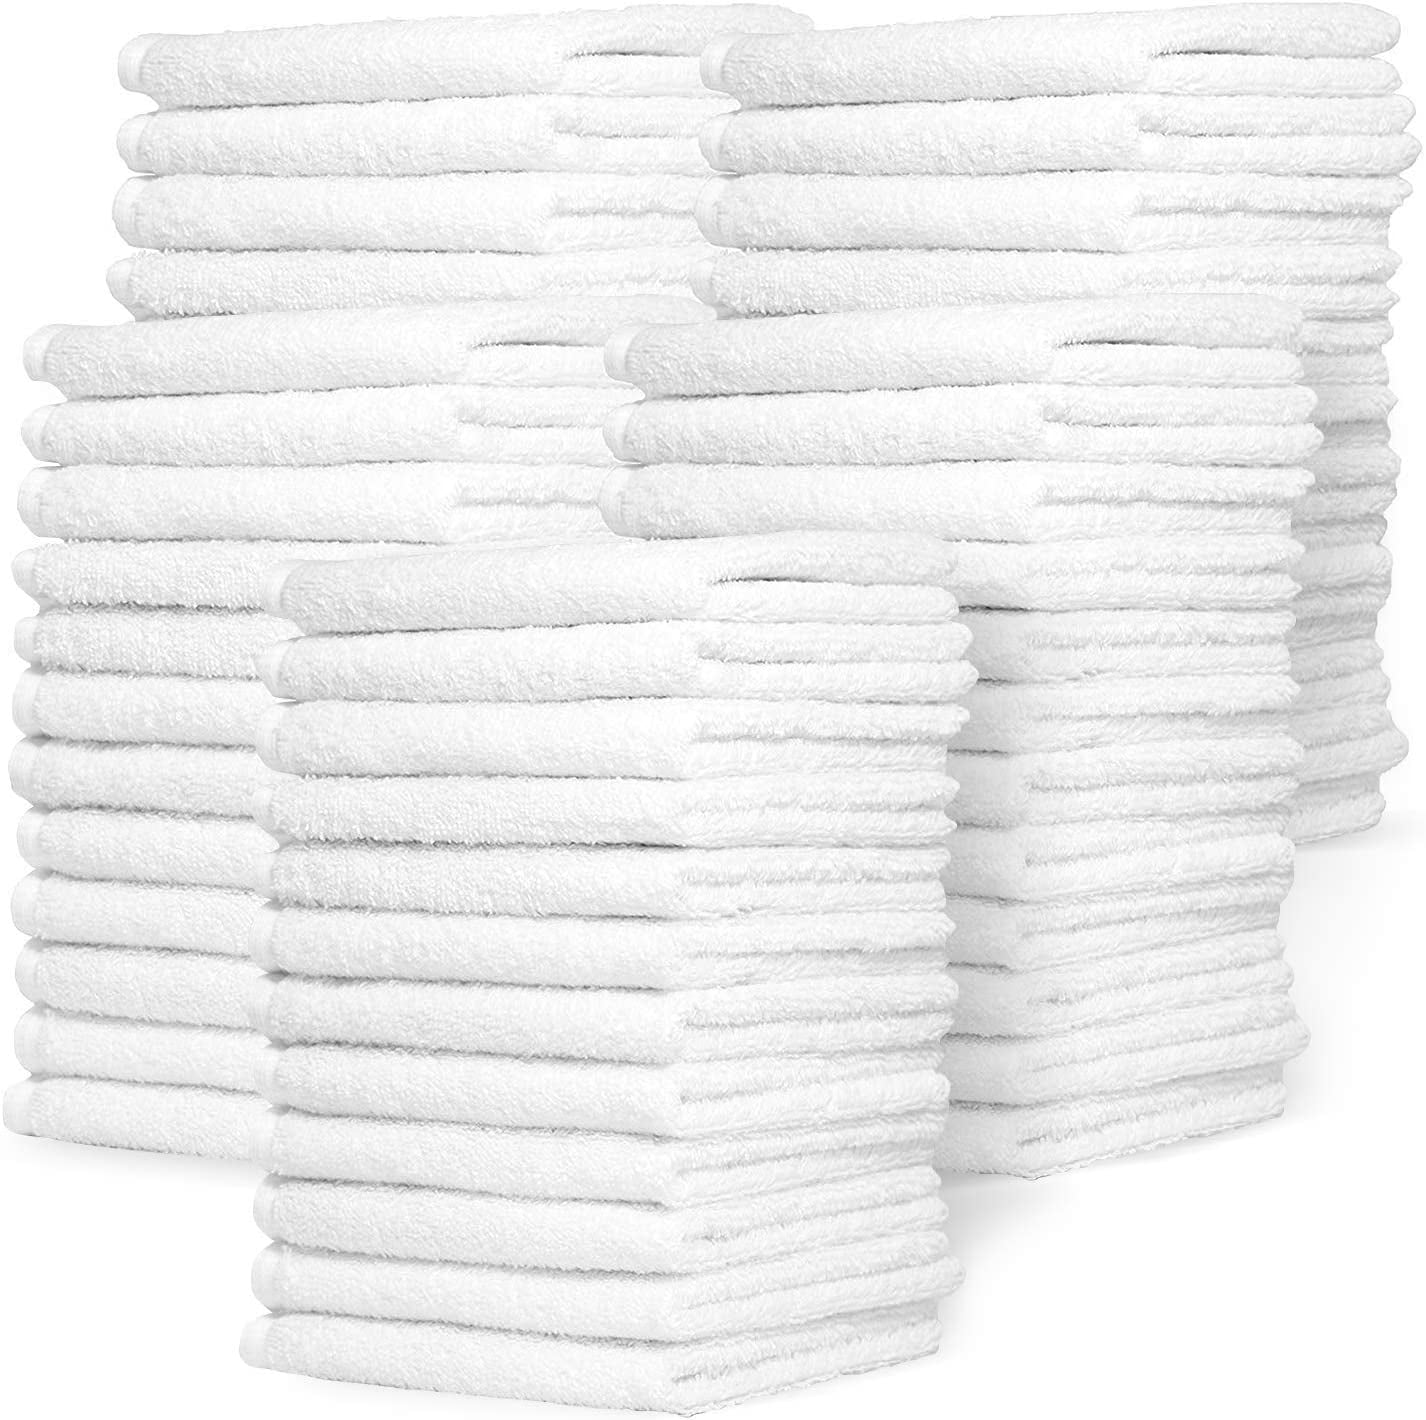 Zeppoli Auto Shop & Car Wash Towels 100% Pure White Cotton 50 Pack 14 x 17 